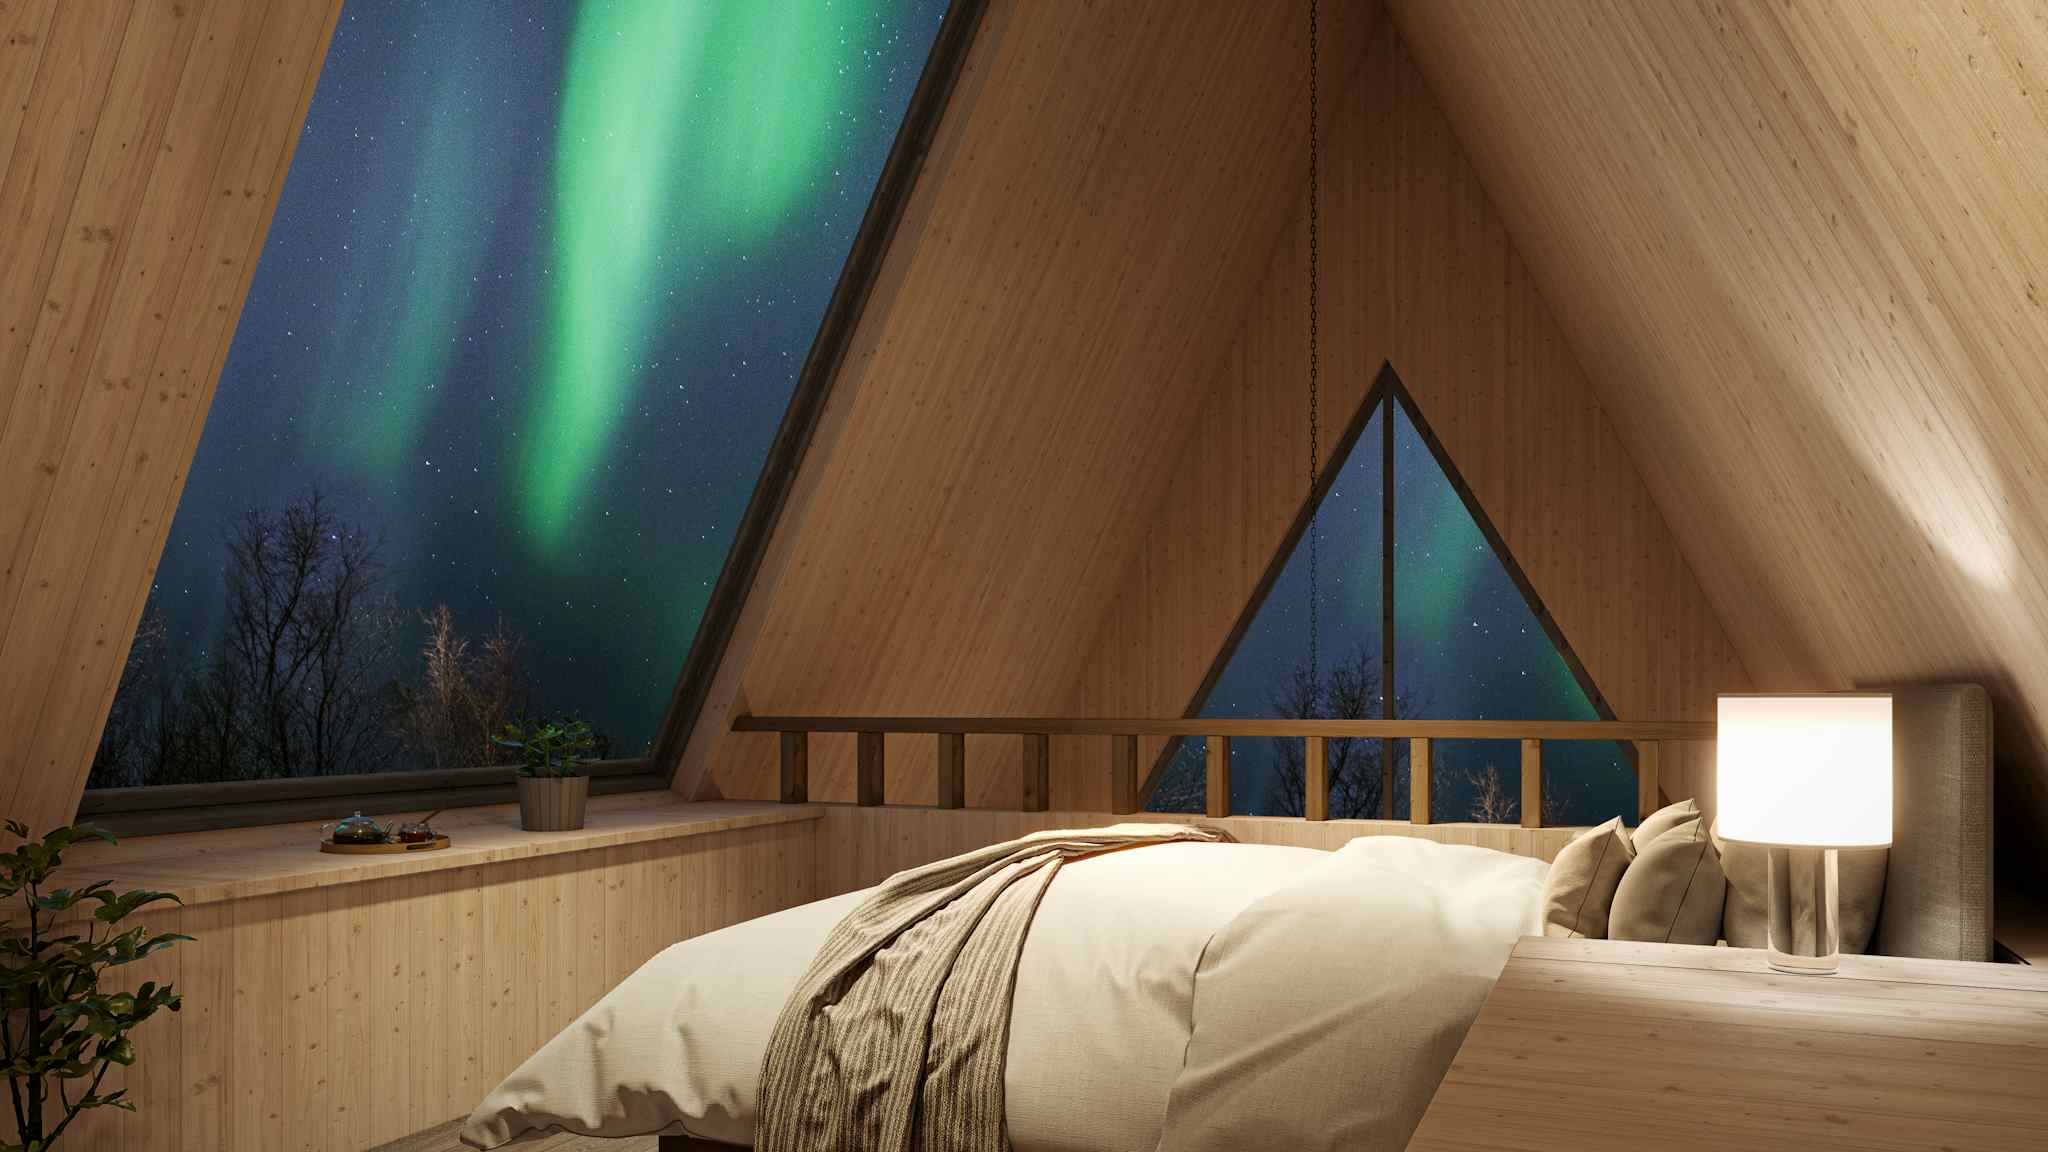 Holmen Husky Forest Suite - Bedroom (Render), source: Holmen Husky